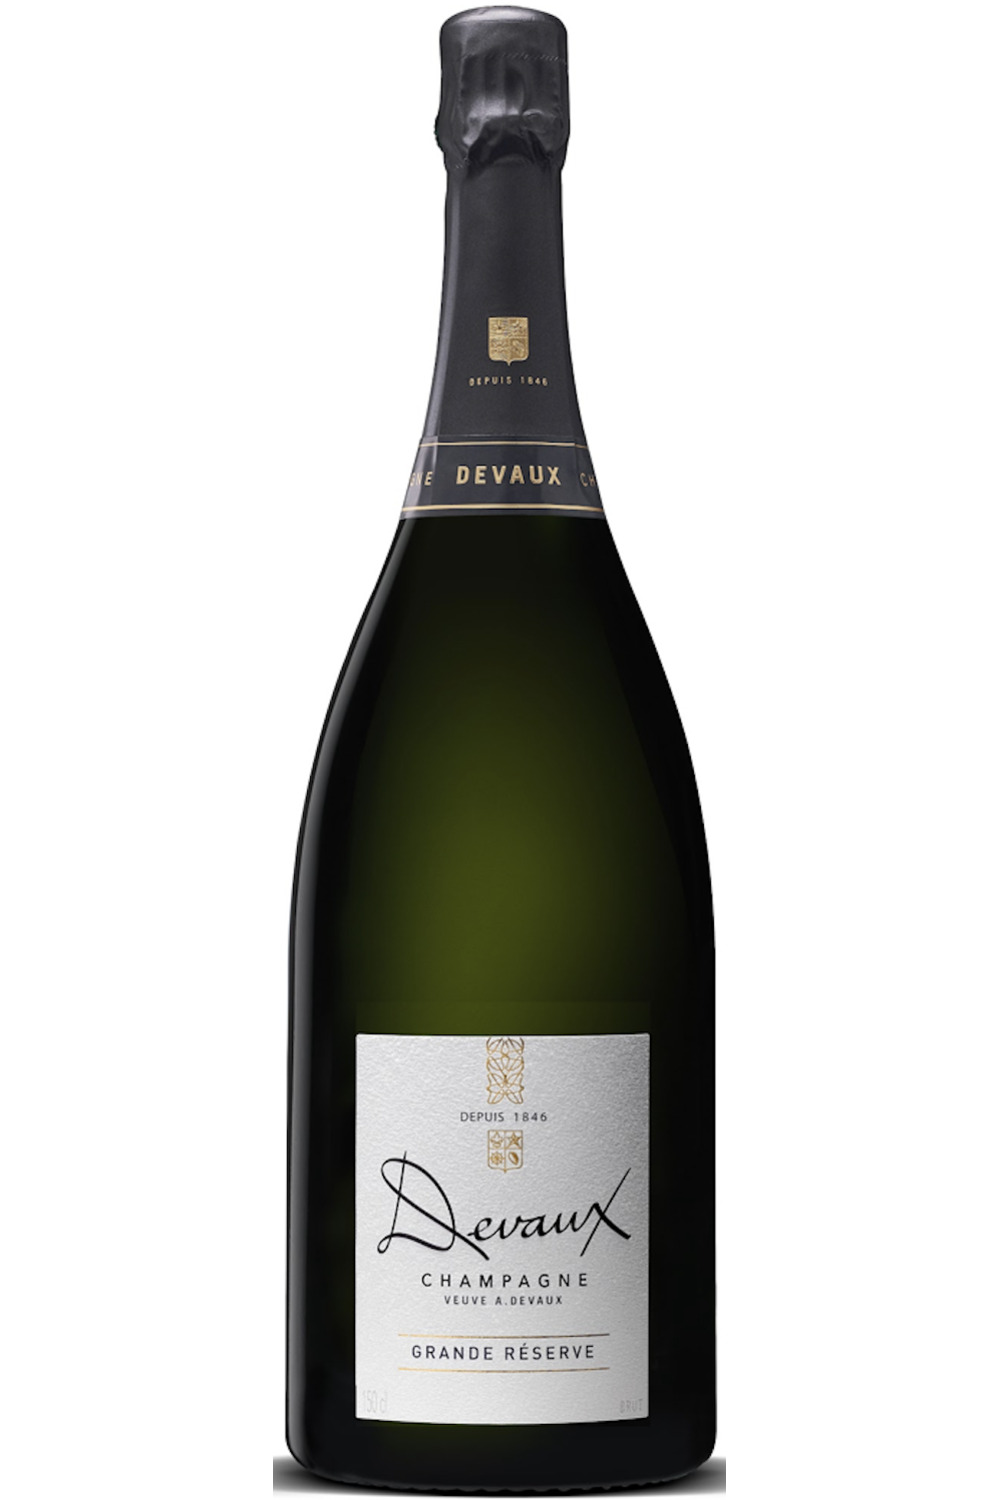 Champagne Gosset - Grand Blanc de Blancs - Bouteille 75CL - Etui